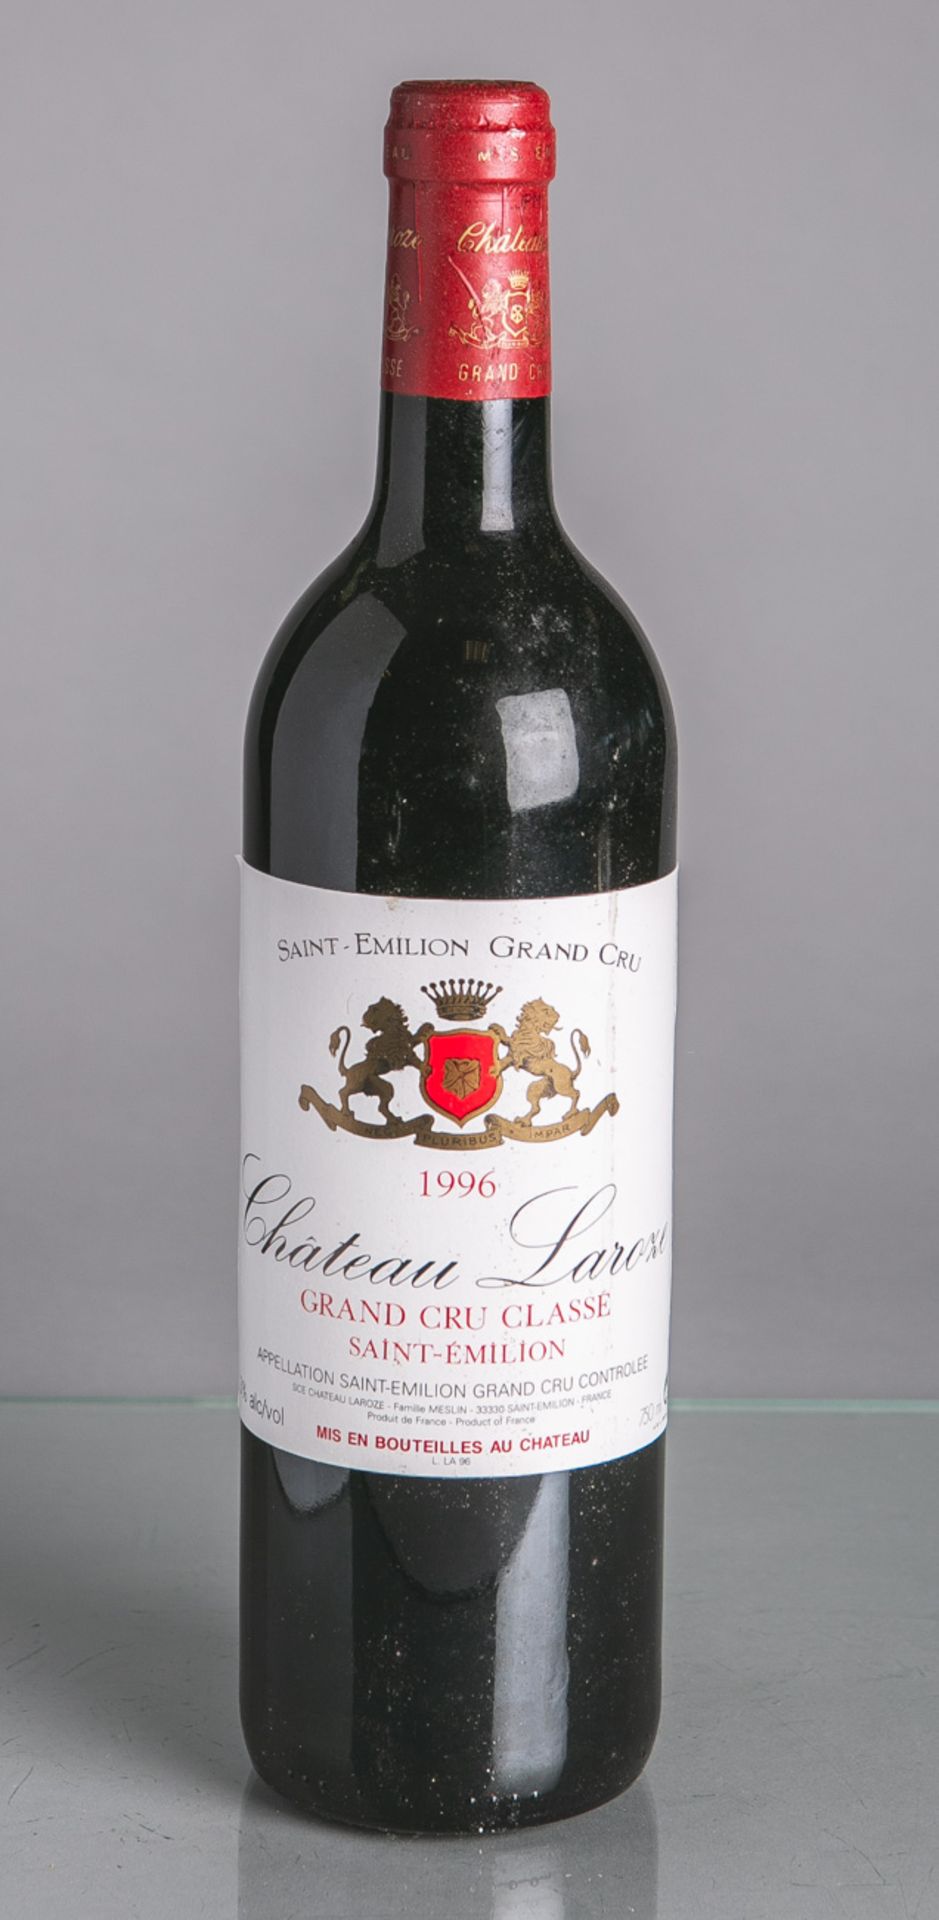 22 Flaschen von Chateau Laroze, Saint Emilion Grand Cru (1996), Rotwein, je 0,75 L. Im